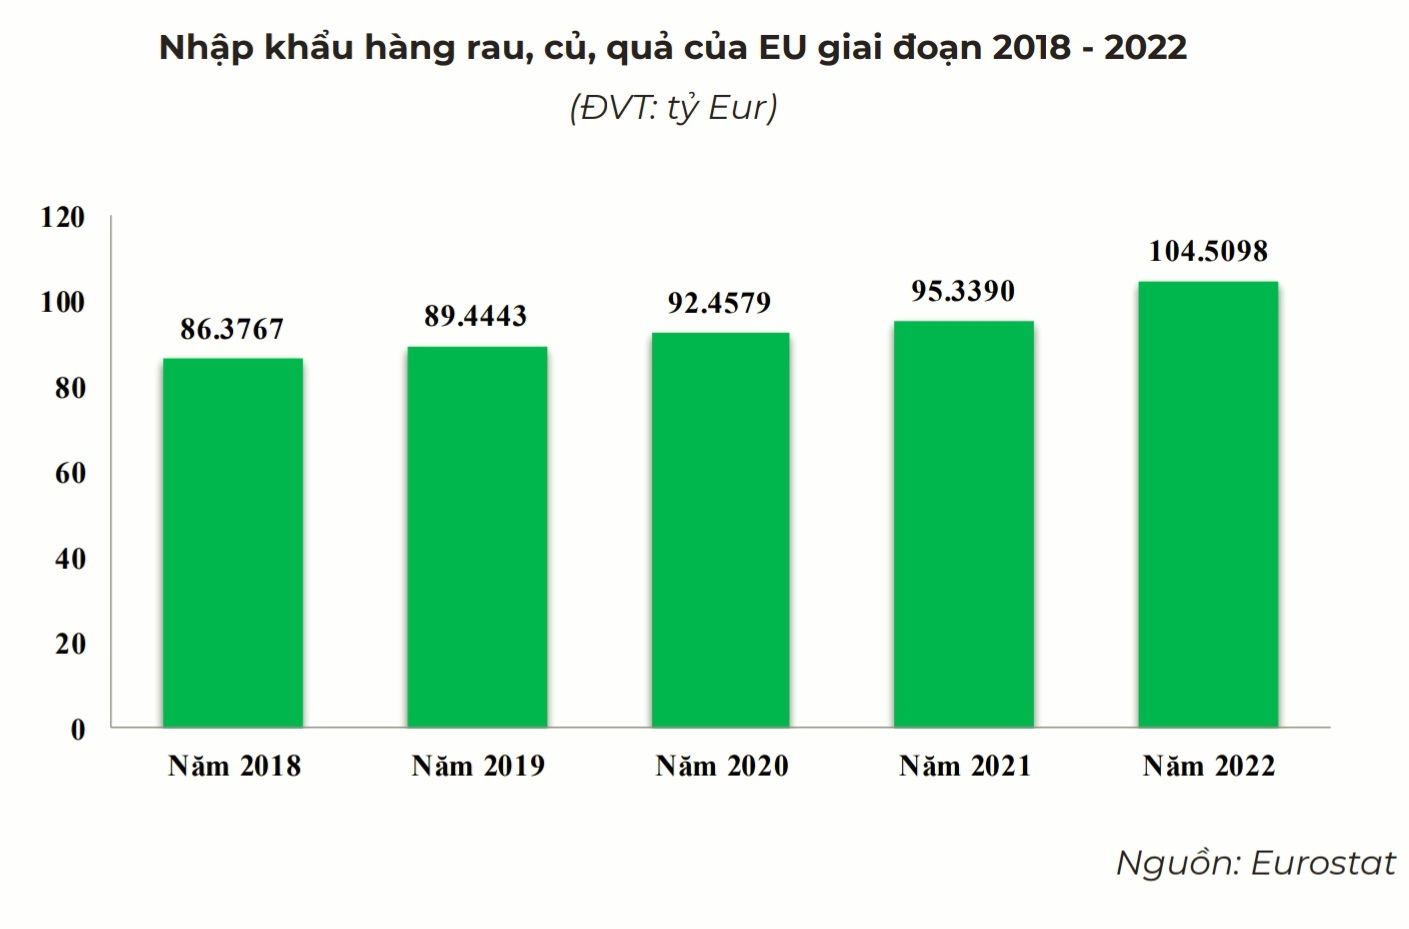 Nhu cầu nhập khẩu rau quả tại EU liên tục tăng trưởng qua các năm.